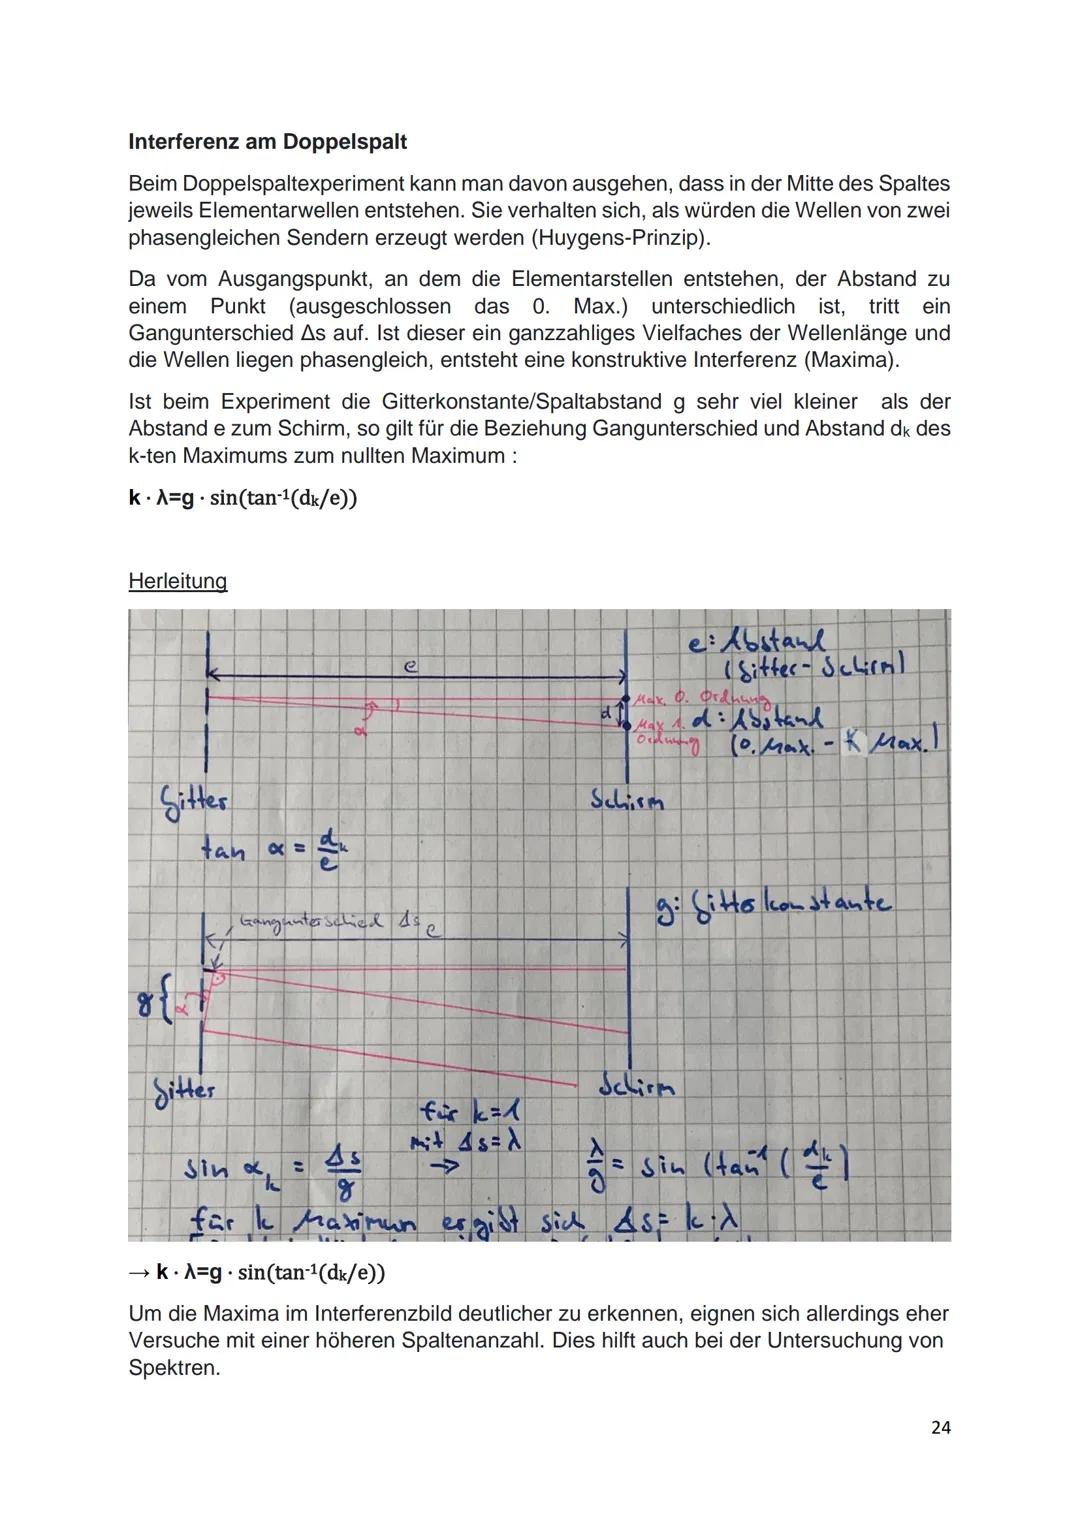 ABI-PHYSIK
Leon Schwarz Inhaltsverzeichnis
Elektrizität.
Elektrizitätslehre
Die Elektronenkanonen und Braunsche Röhre...
Elektrische Ladung 